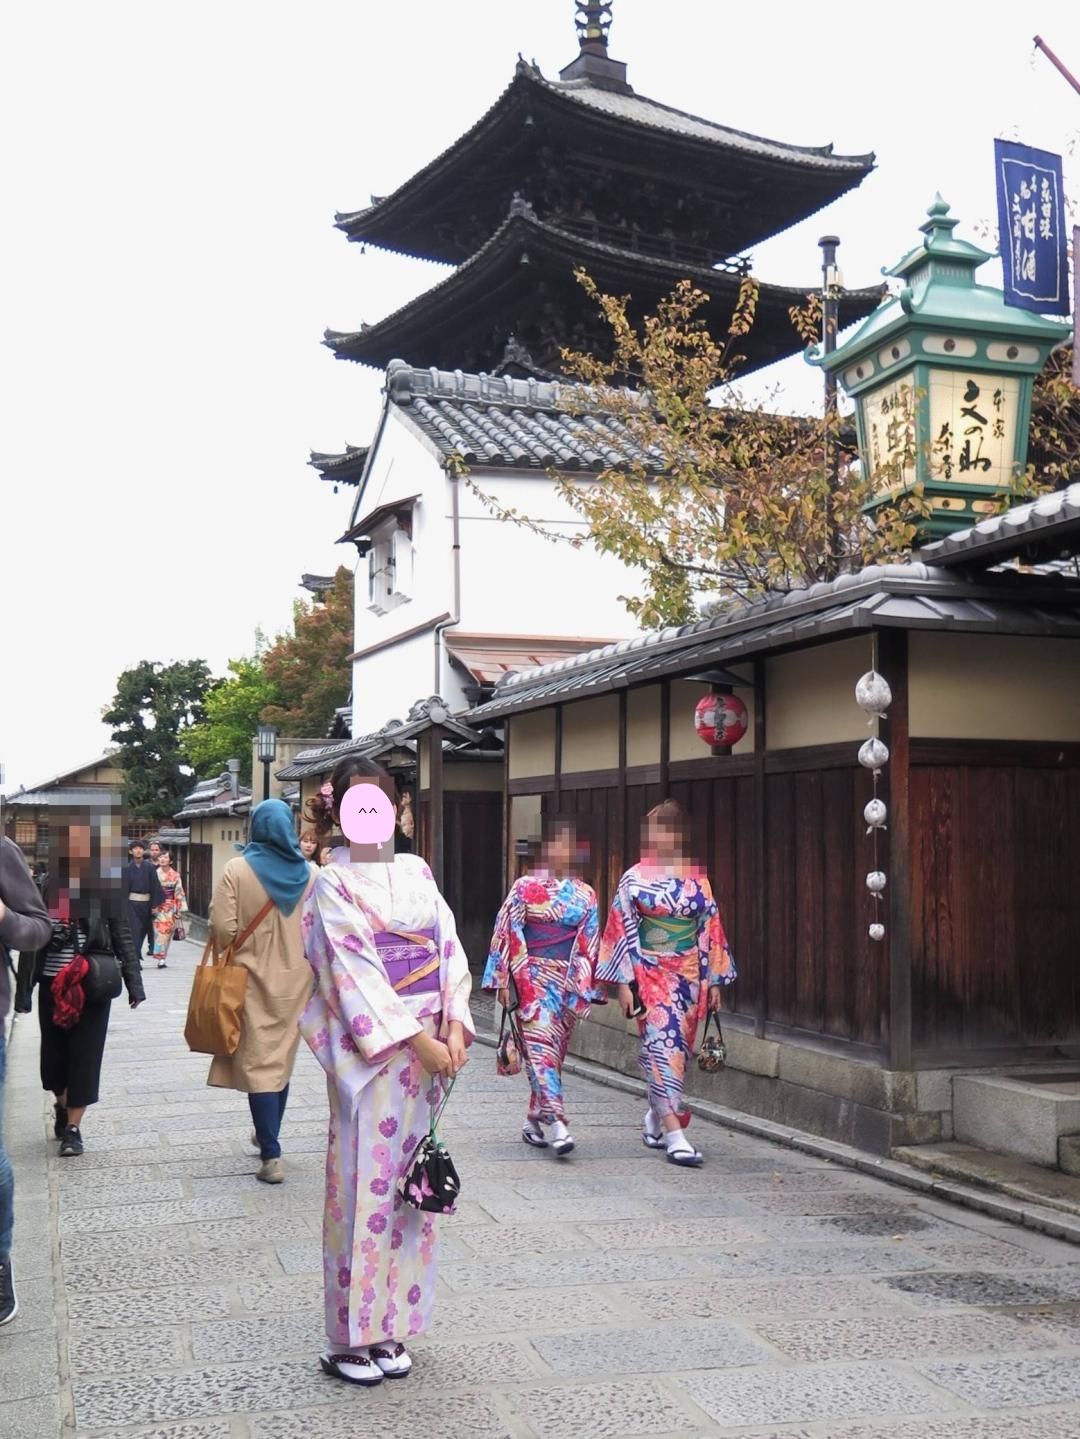 京都京小町和服出租店 寬敞、親切、和服質感佳 距離八坂塔只要5分鐘 同場加映街拍京都和服妹！ @。CJ夫人。